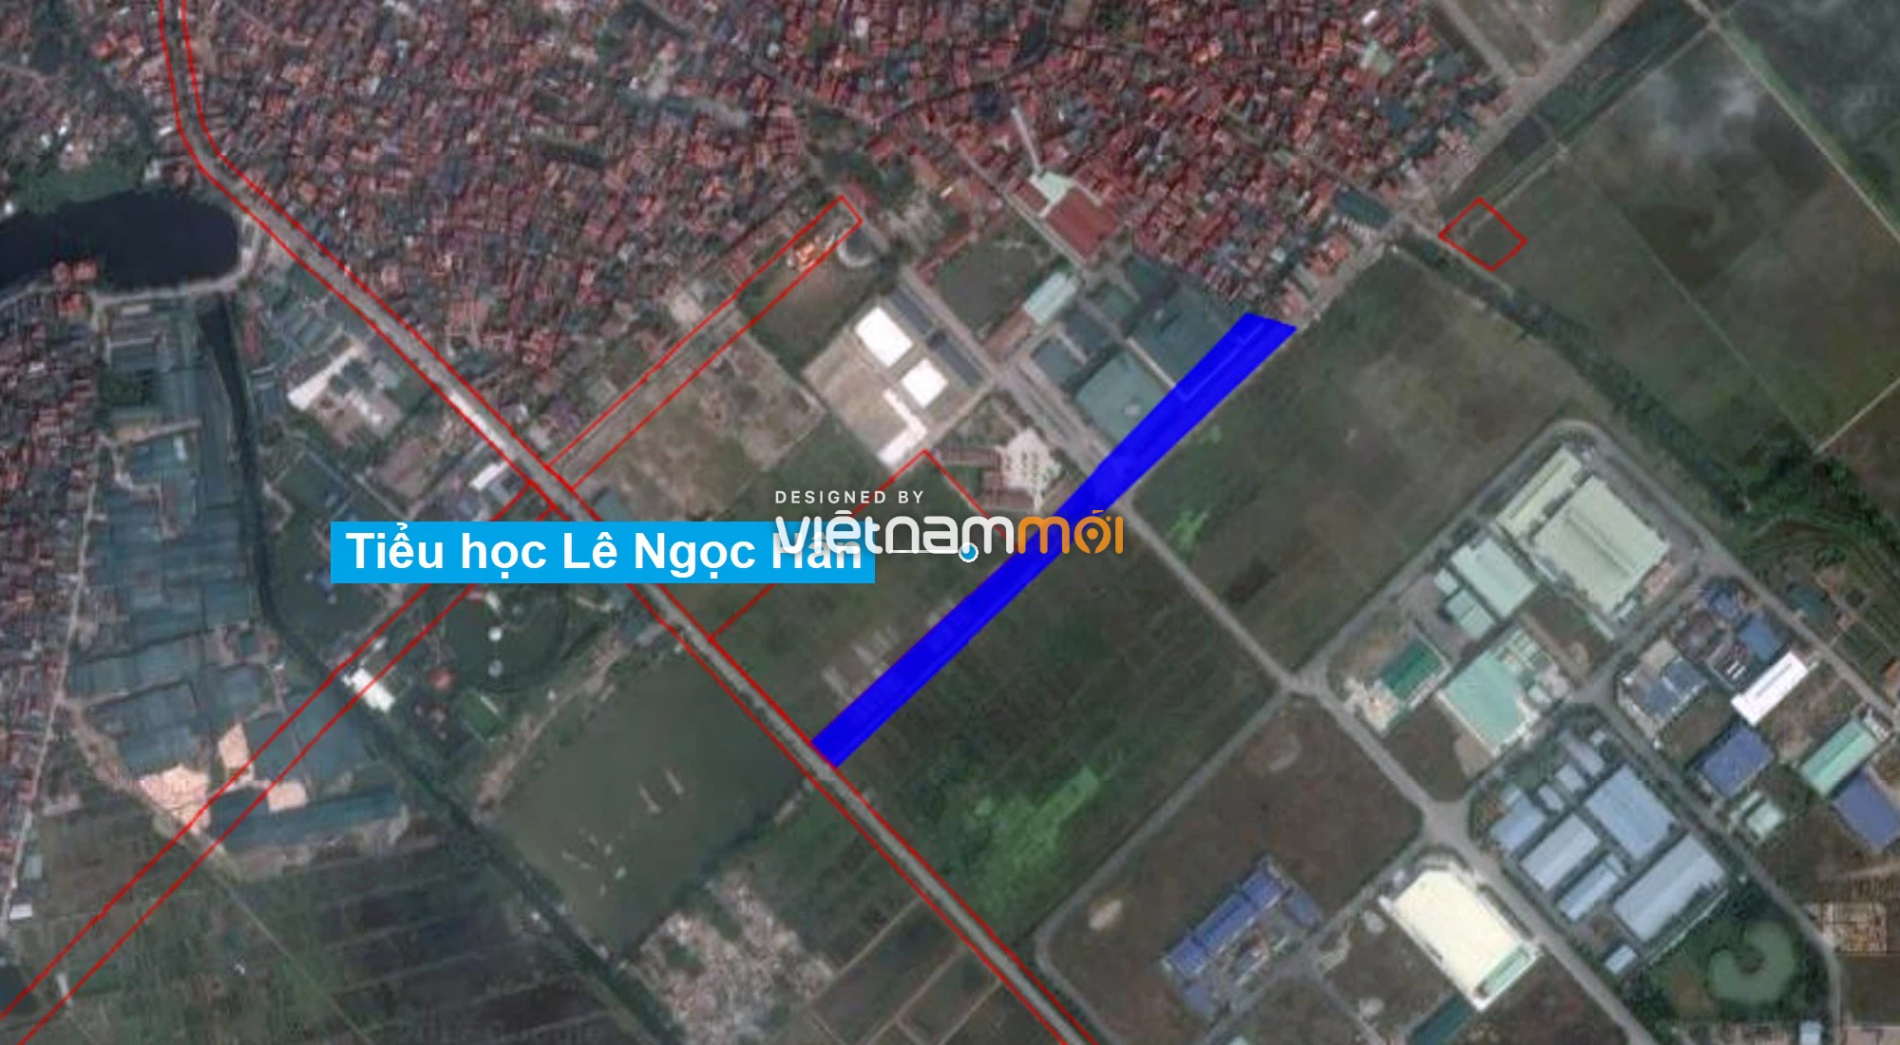 Những khu đất sắp thu hồi để mở đường ở huyện Gia Lâm, Hà Nội (phần 1) - Ảnh 17.